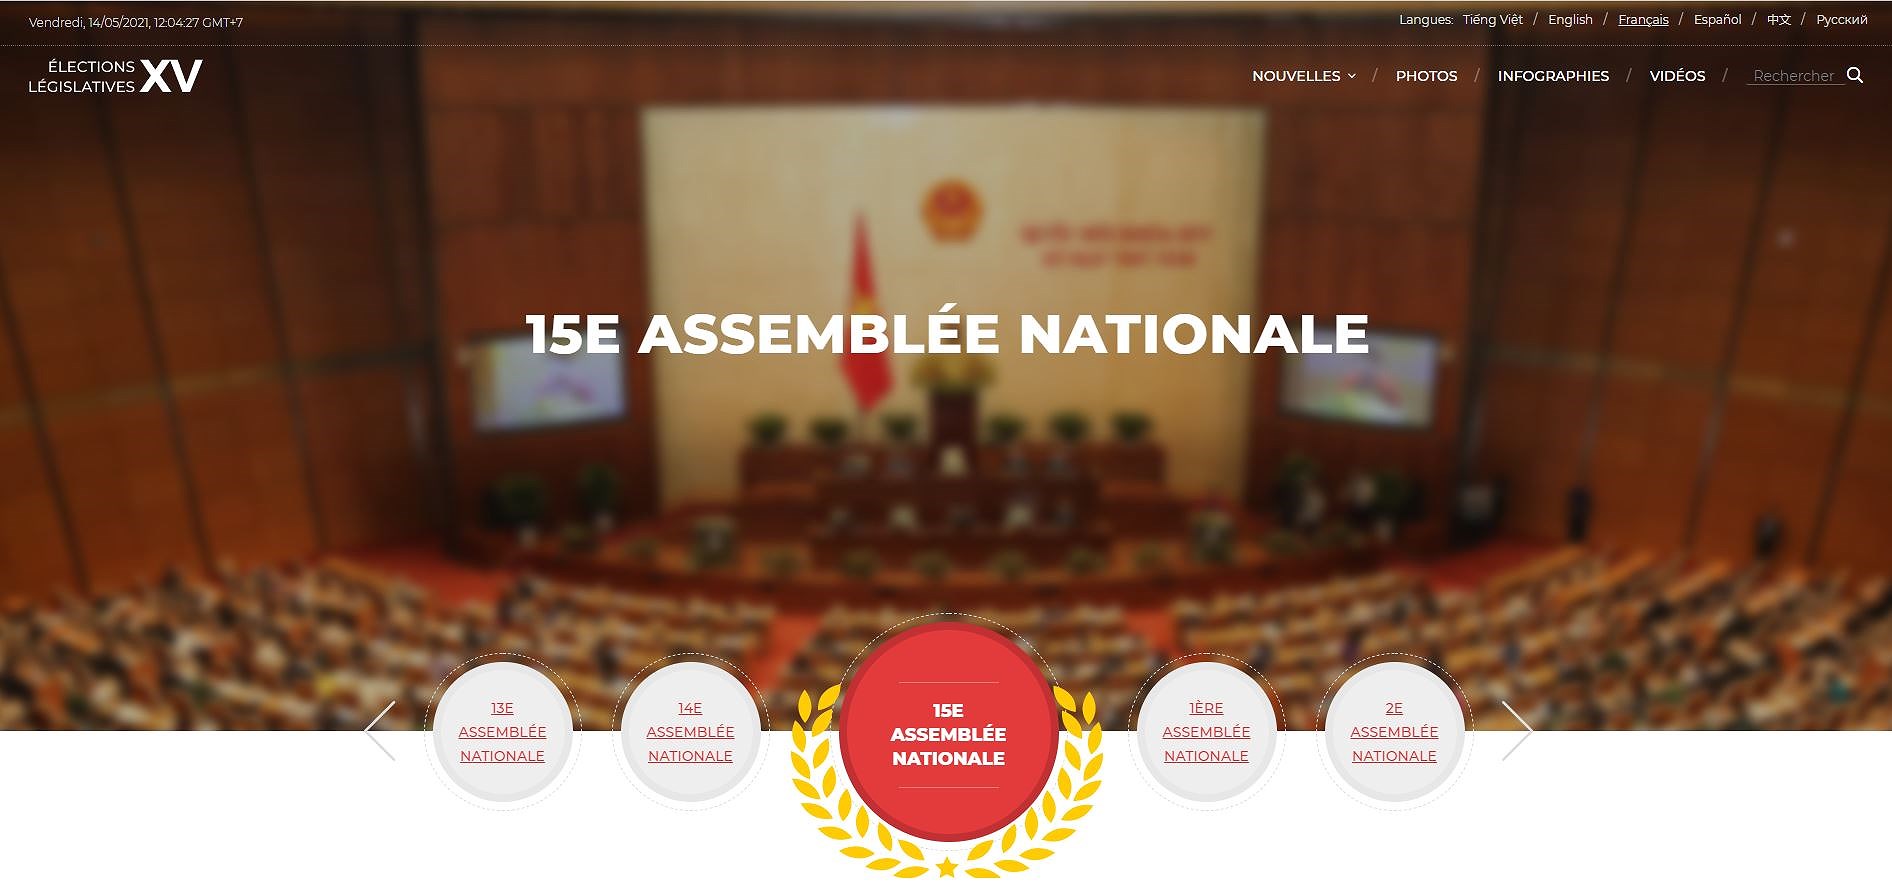 La VNA inaugure une page web speciale sur les elections legislatives hinh anh 1